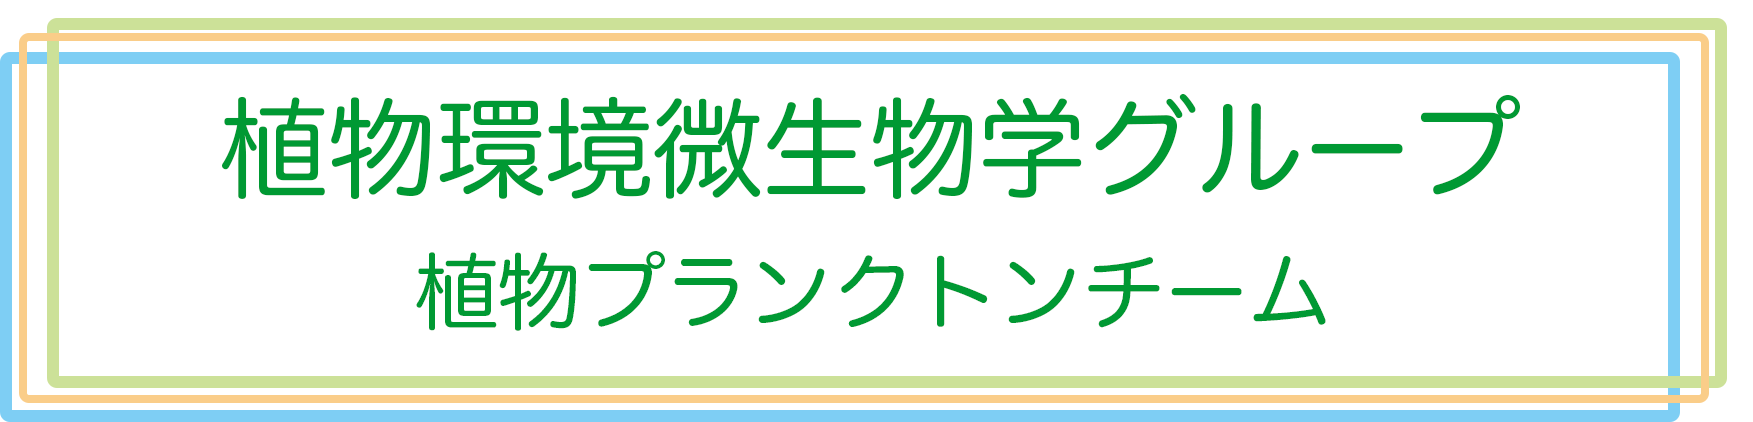 ラボロゴ日本語